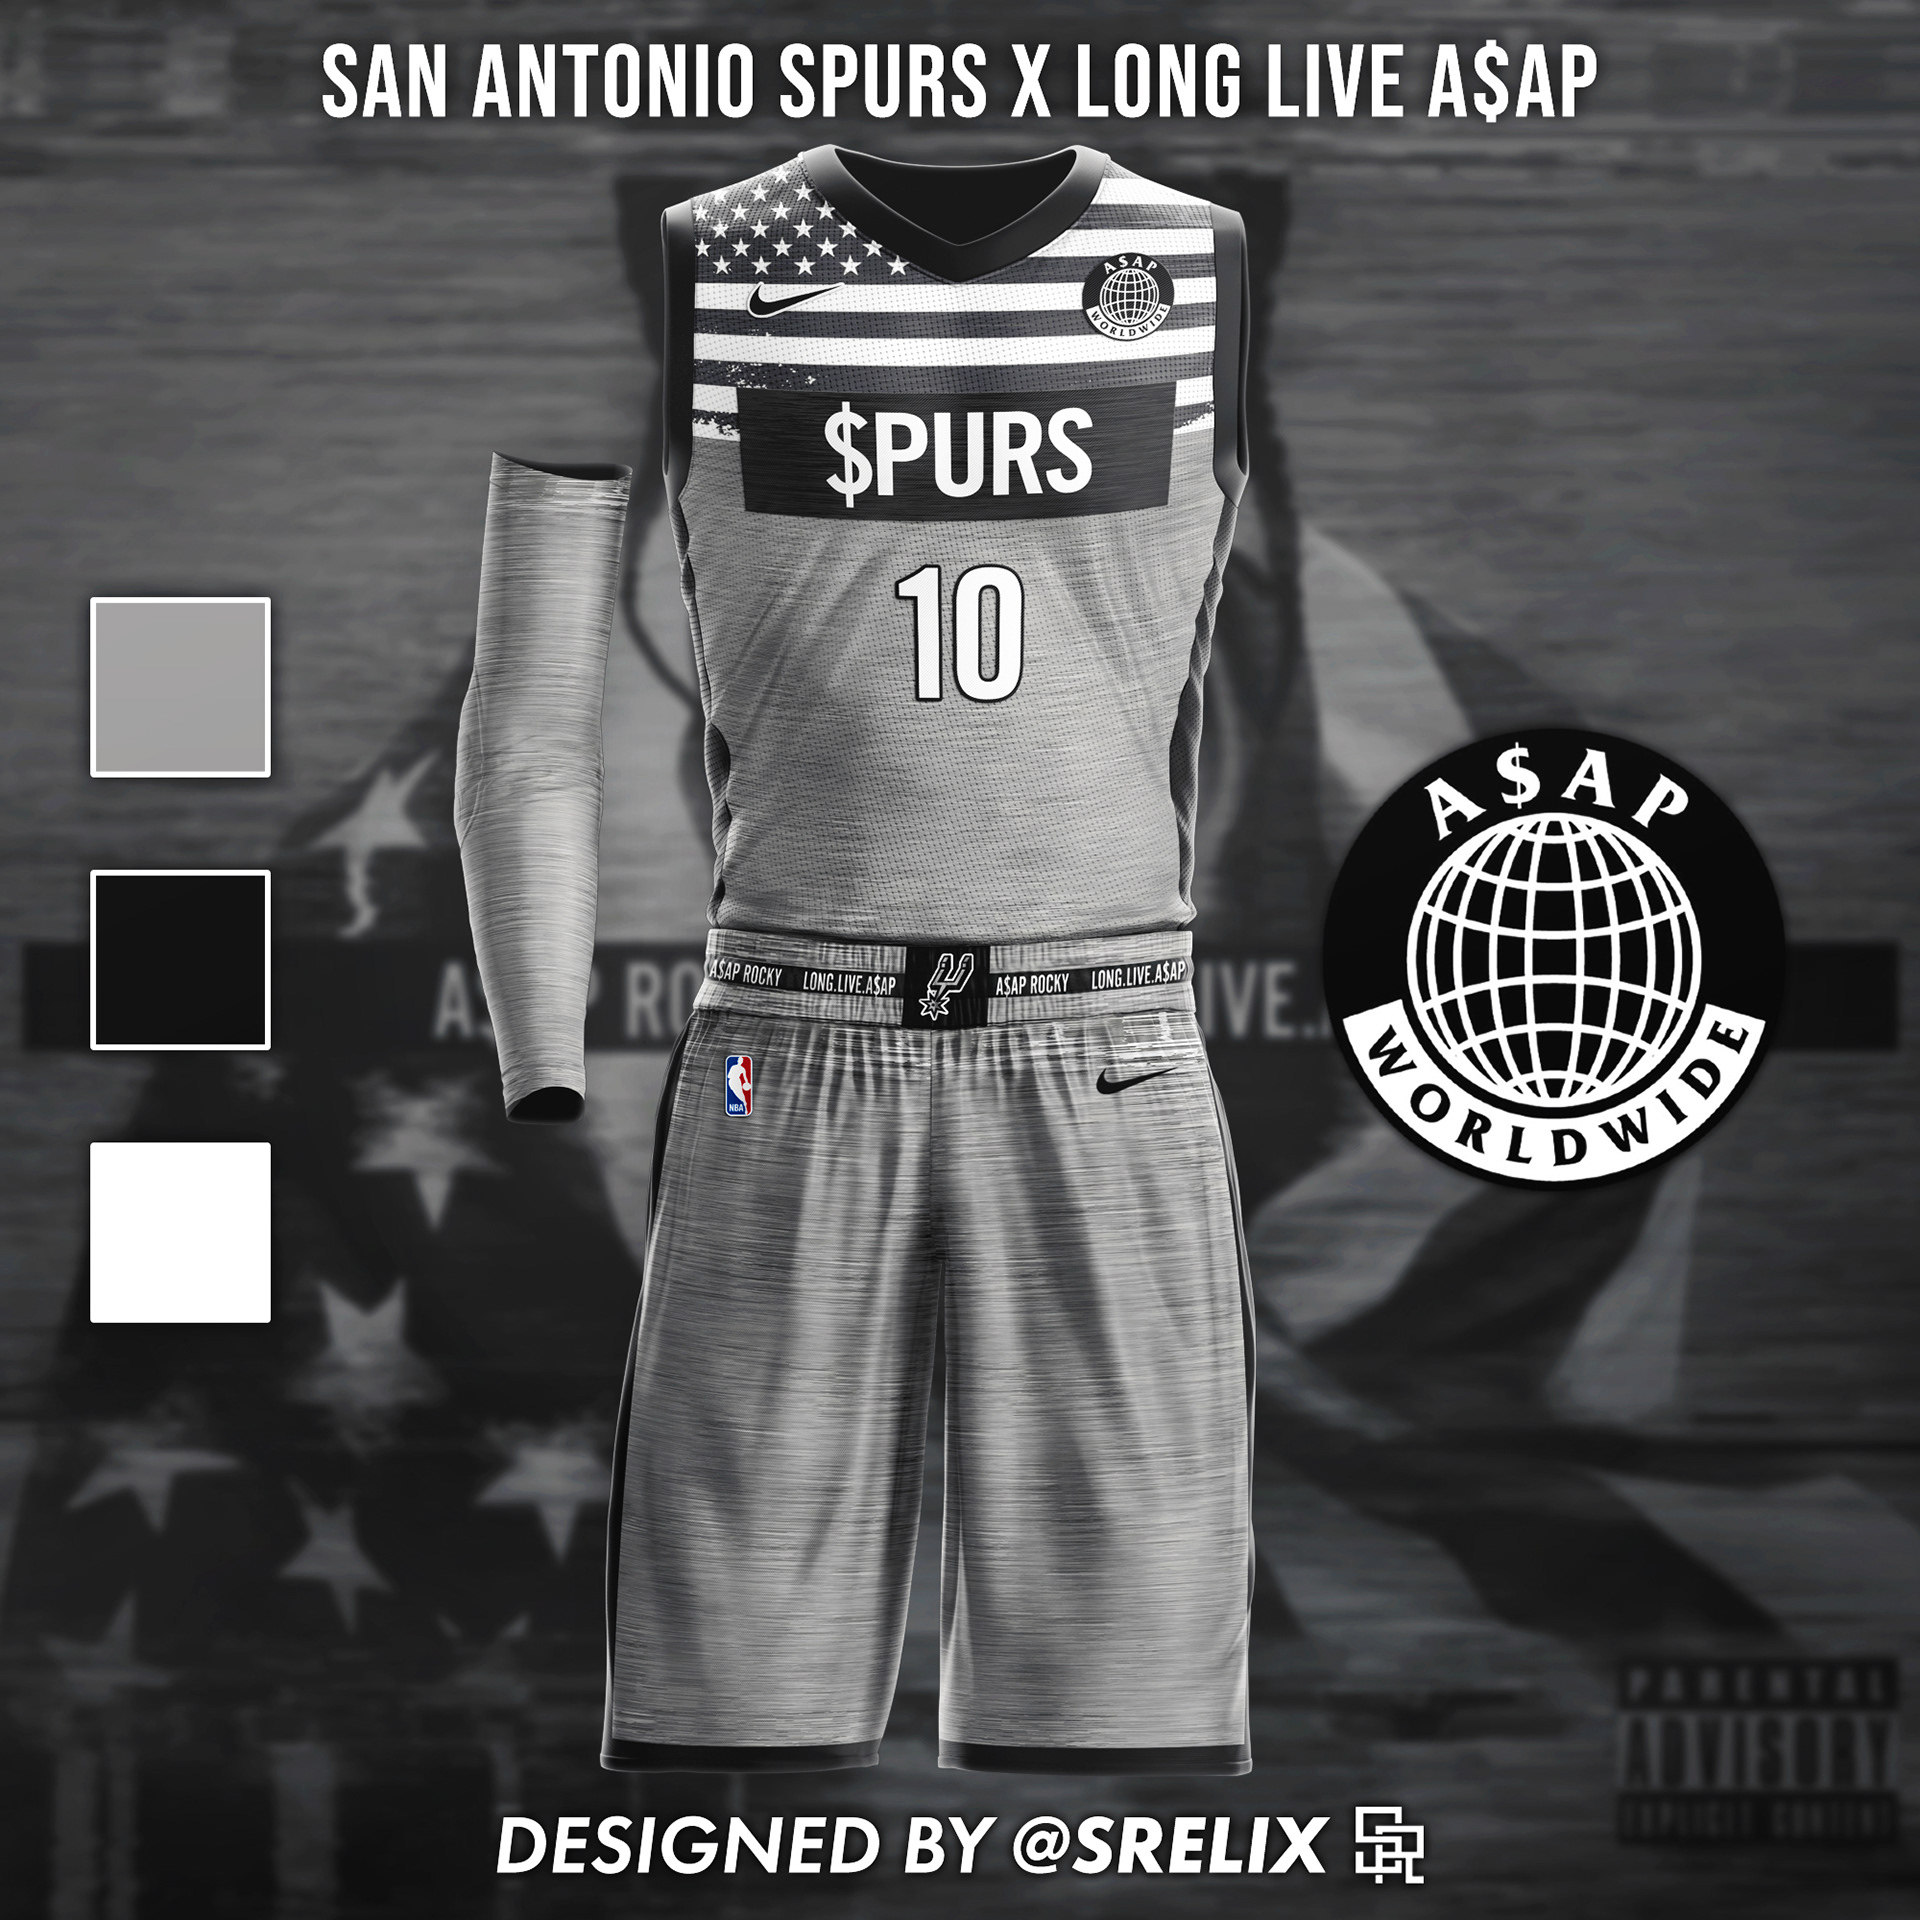 I (@srelix on Instagram) designed an NBA x Hip-Hop jersey for all